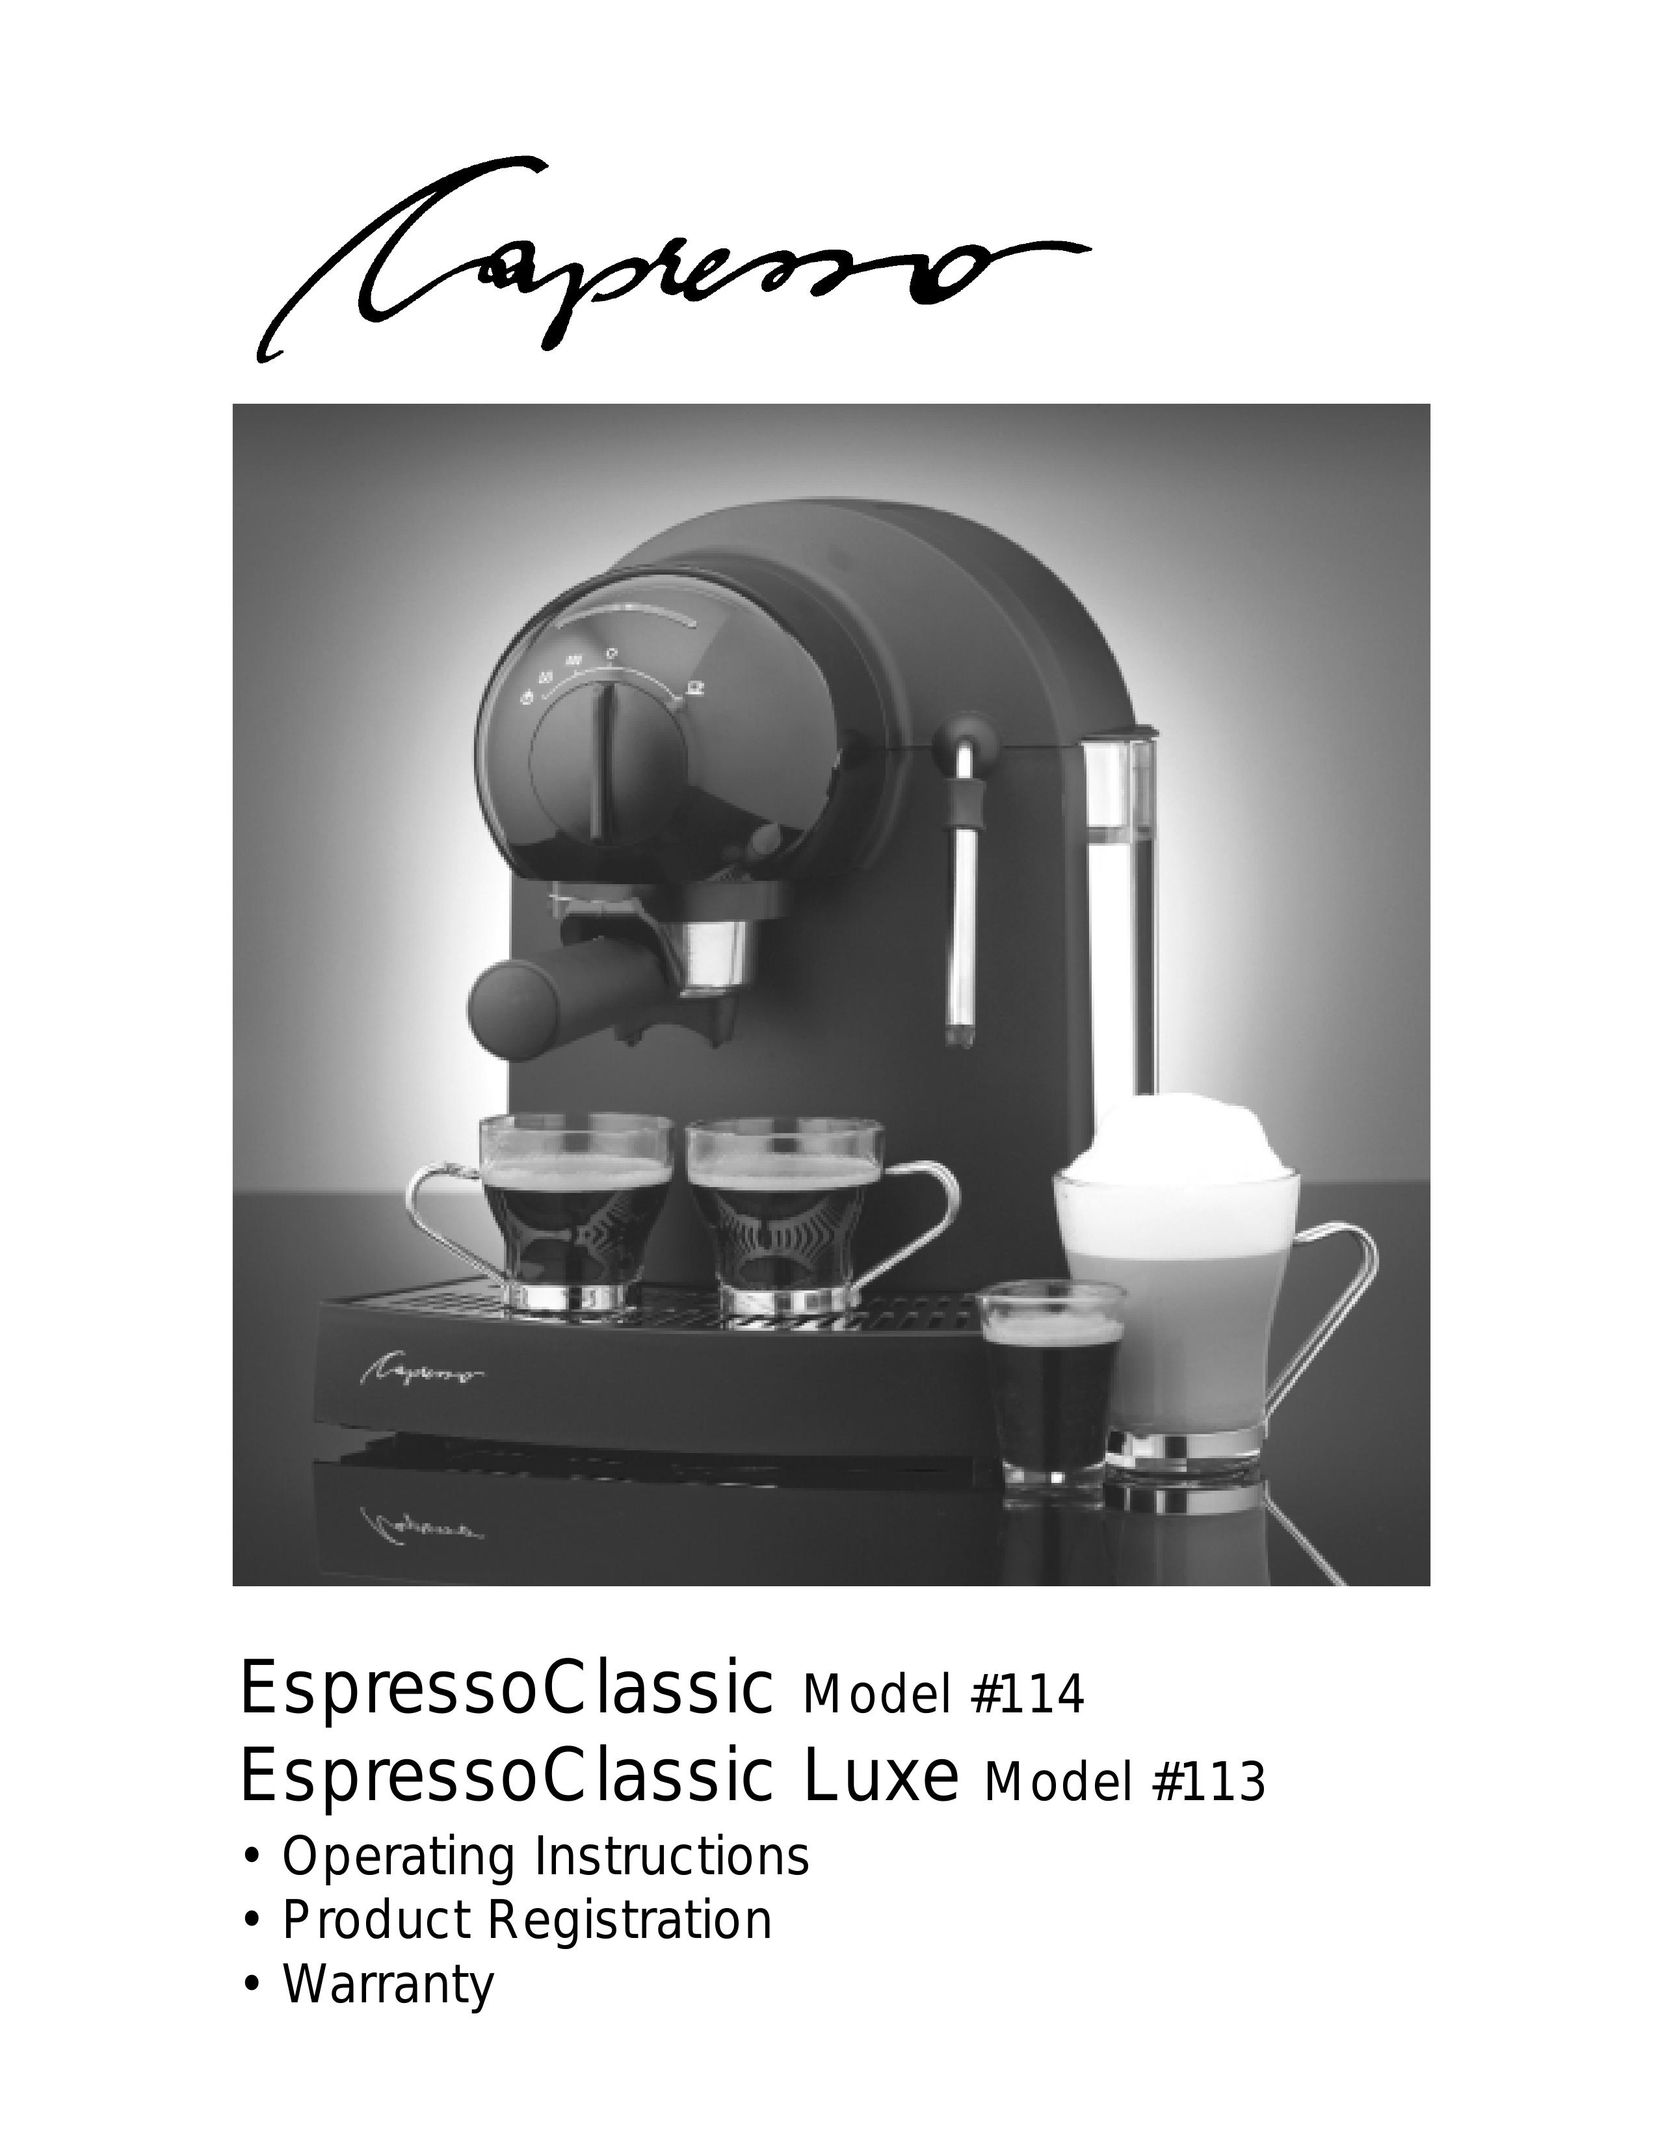 Capresso Espresso Classic Luxe 113 Espresso Maker User Manual